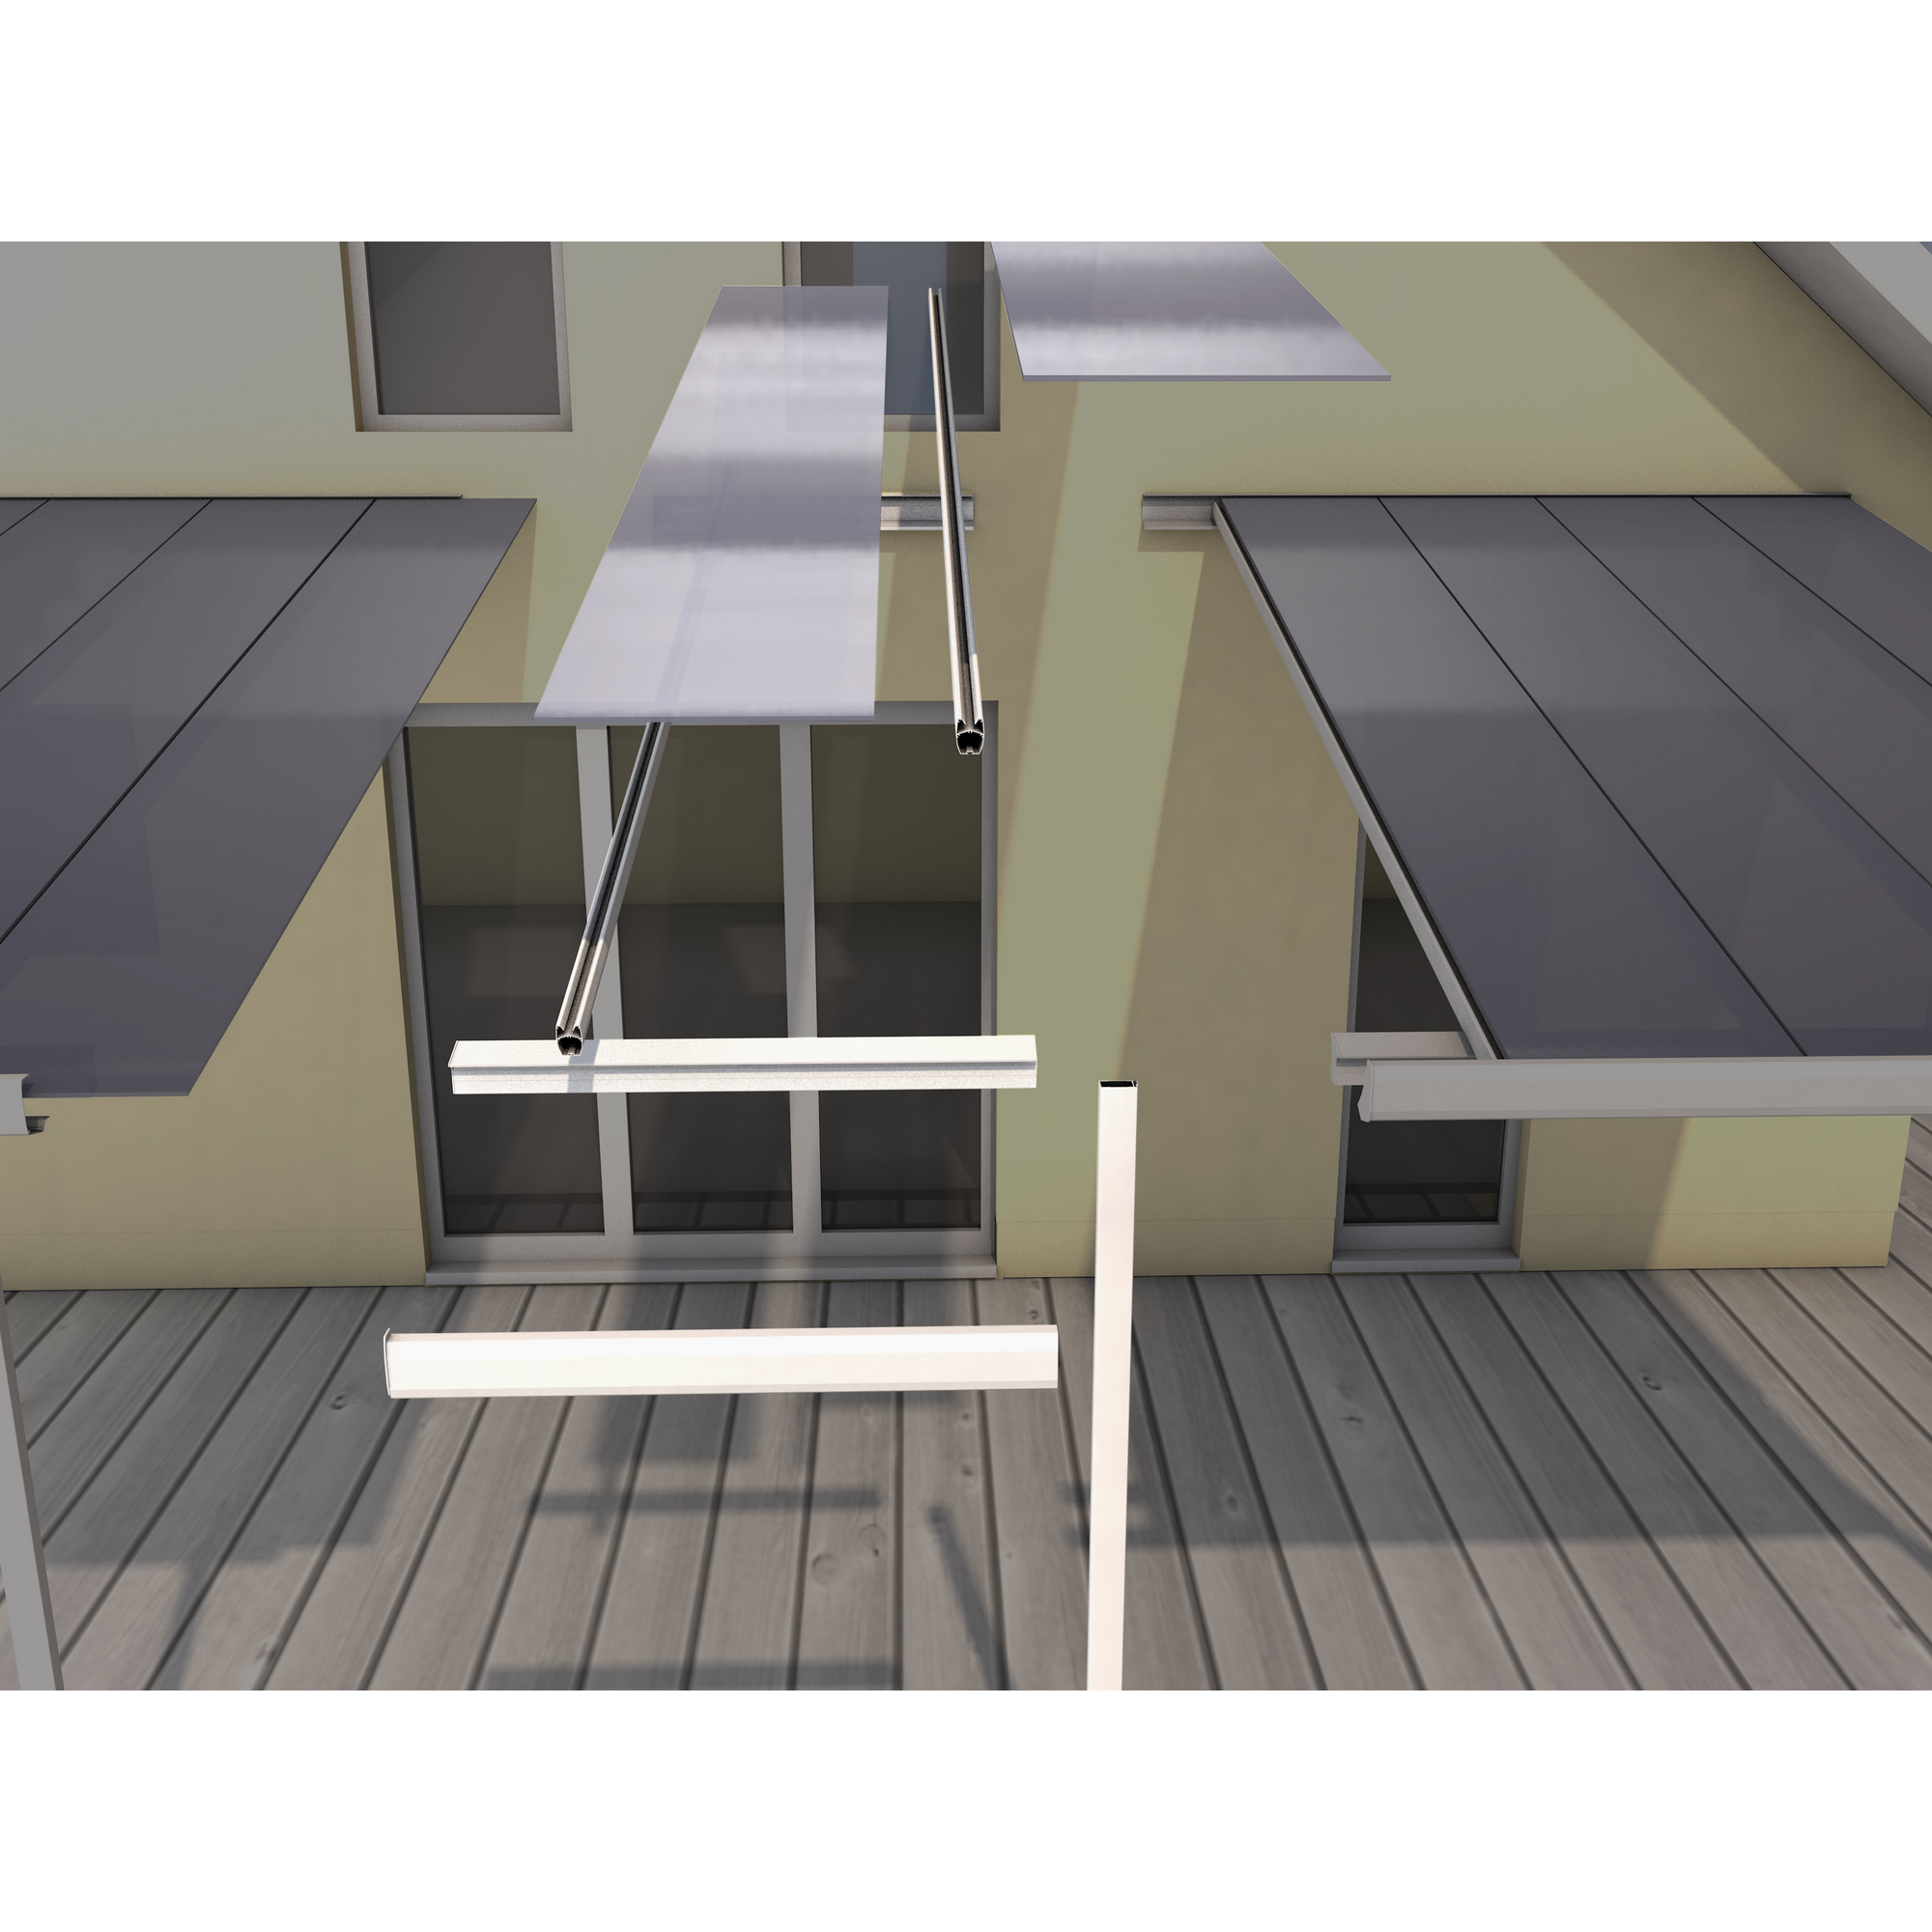 Terrassenüberdachung Erweiterungsmodul 406 x 120 cm, weiß + product picture